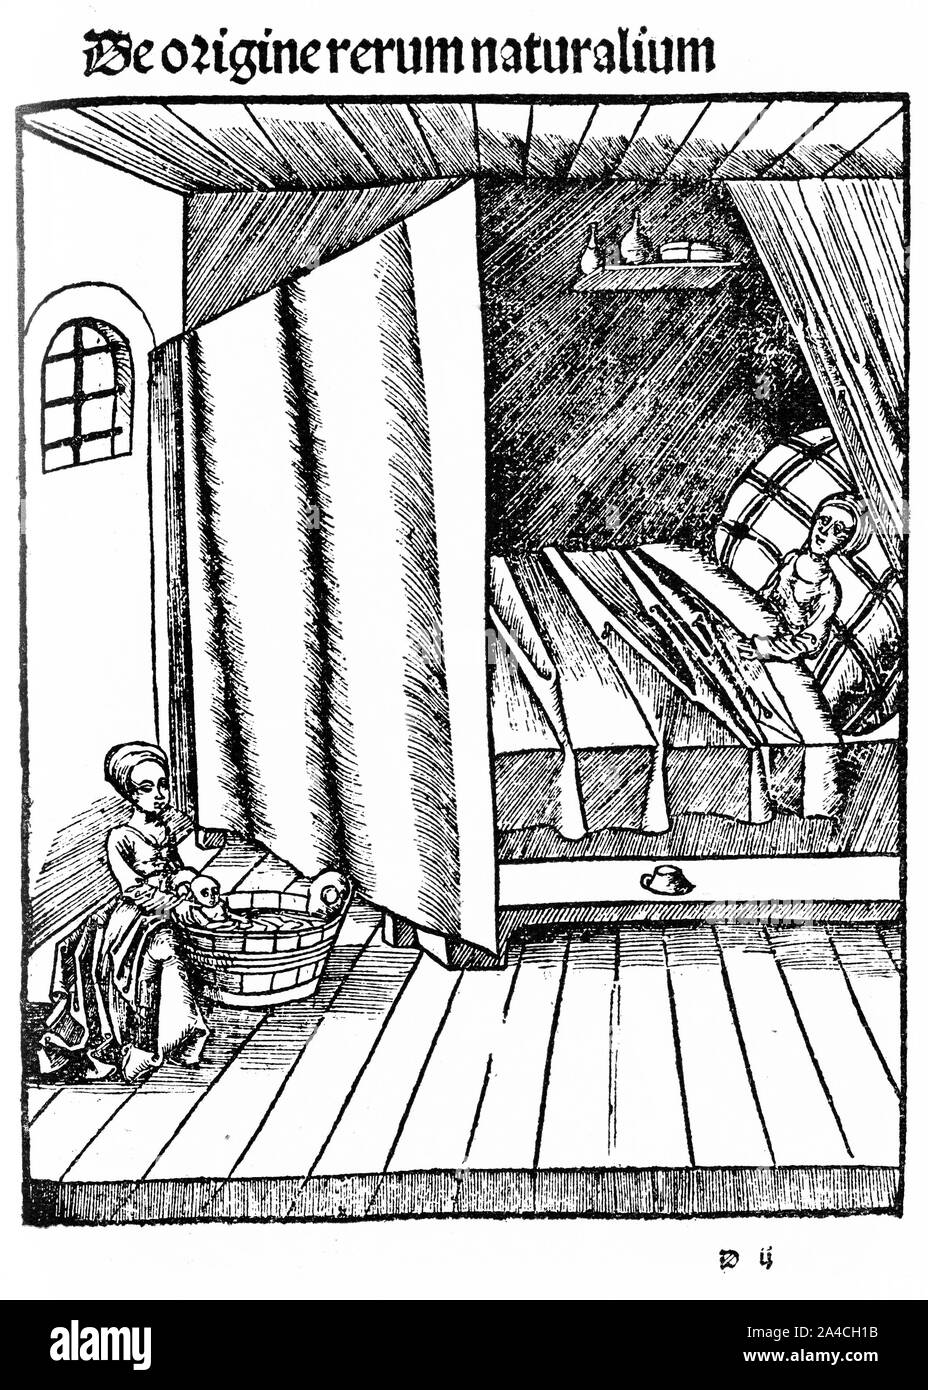 Holzschnitt von einem Baby das erste Bad in der Holzwanne gegeben, während die Mutter erholt sich in der Geburt Kammer. Von Margarita Philosophica (Die philosophische Pearl) von Gregor Reisch, 1517. Stockfoto